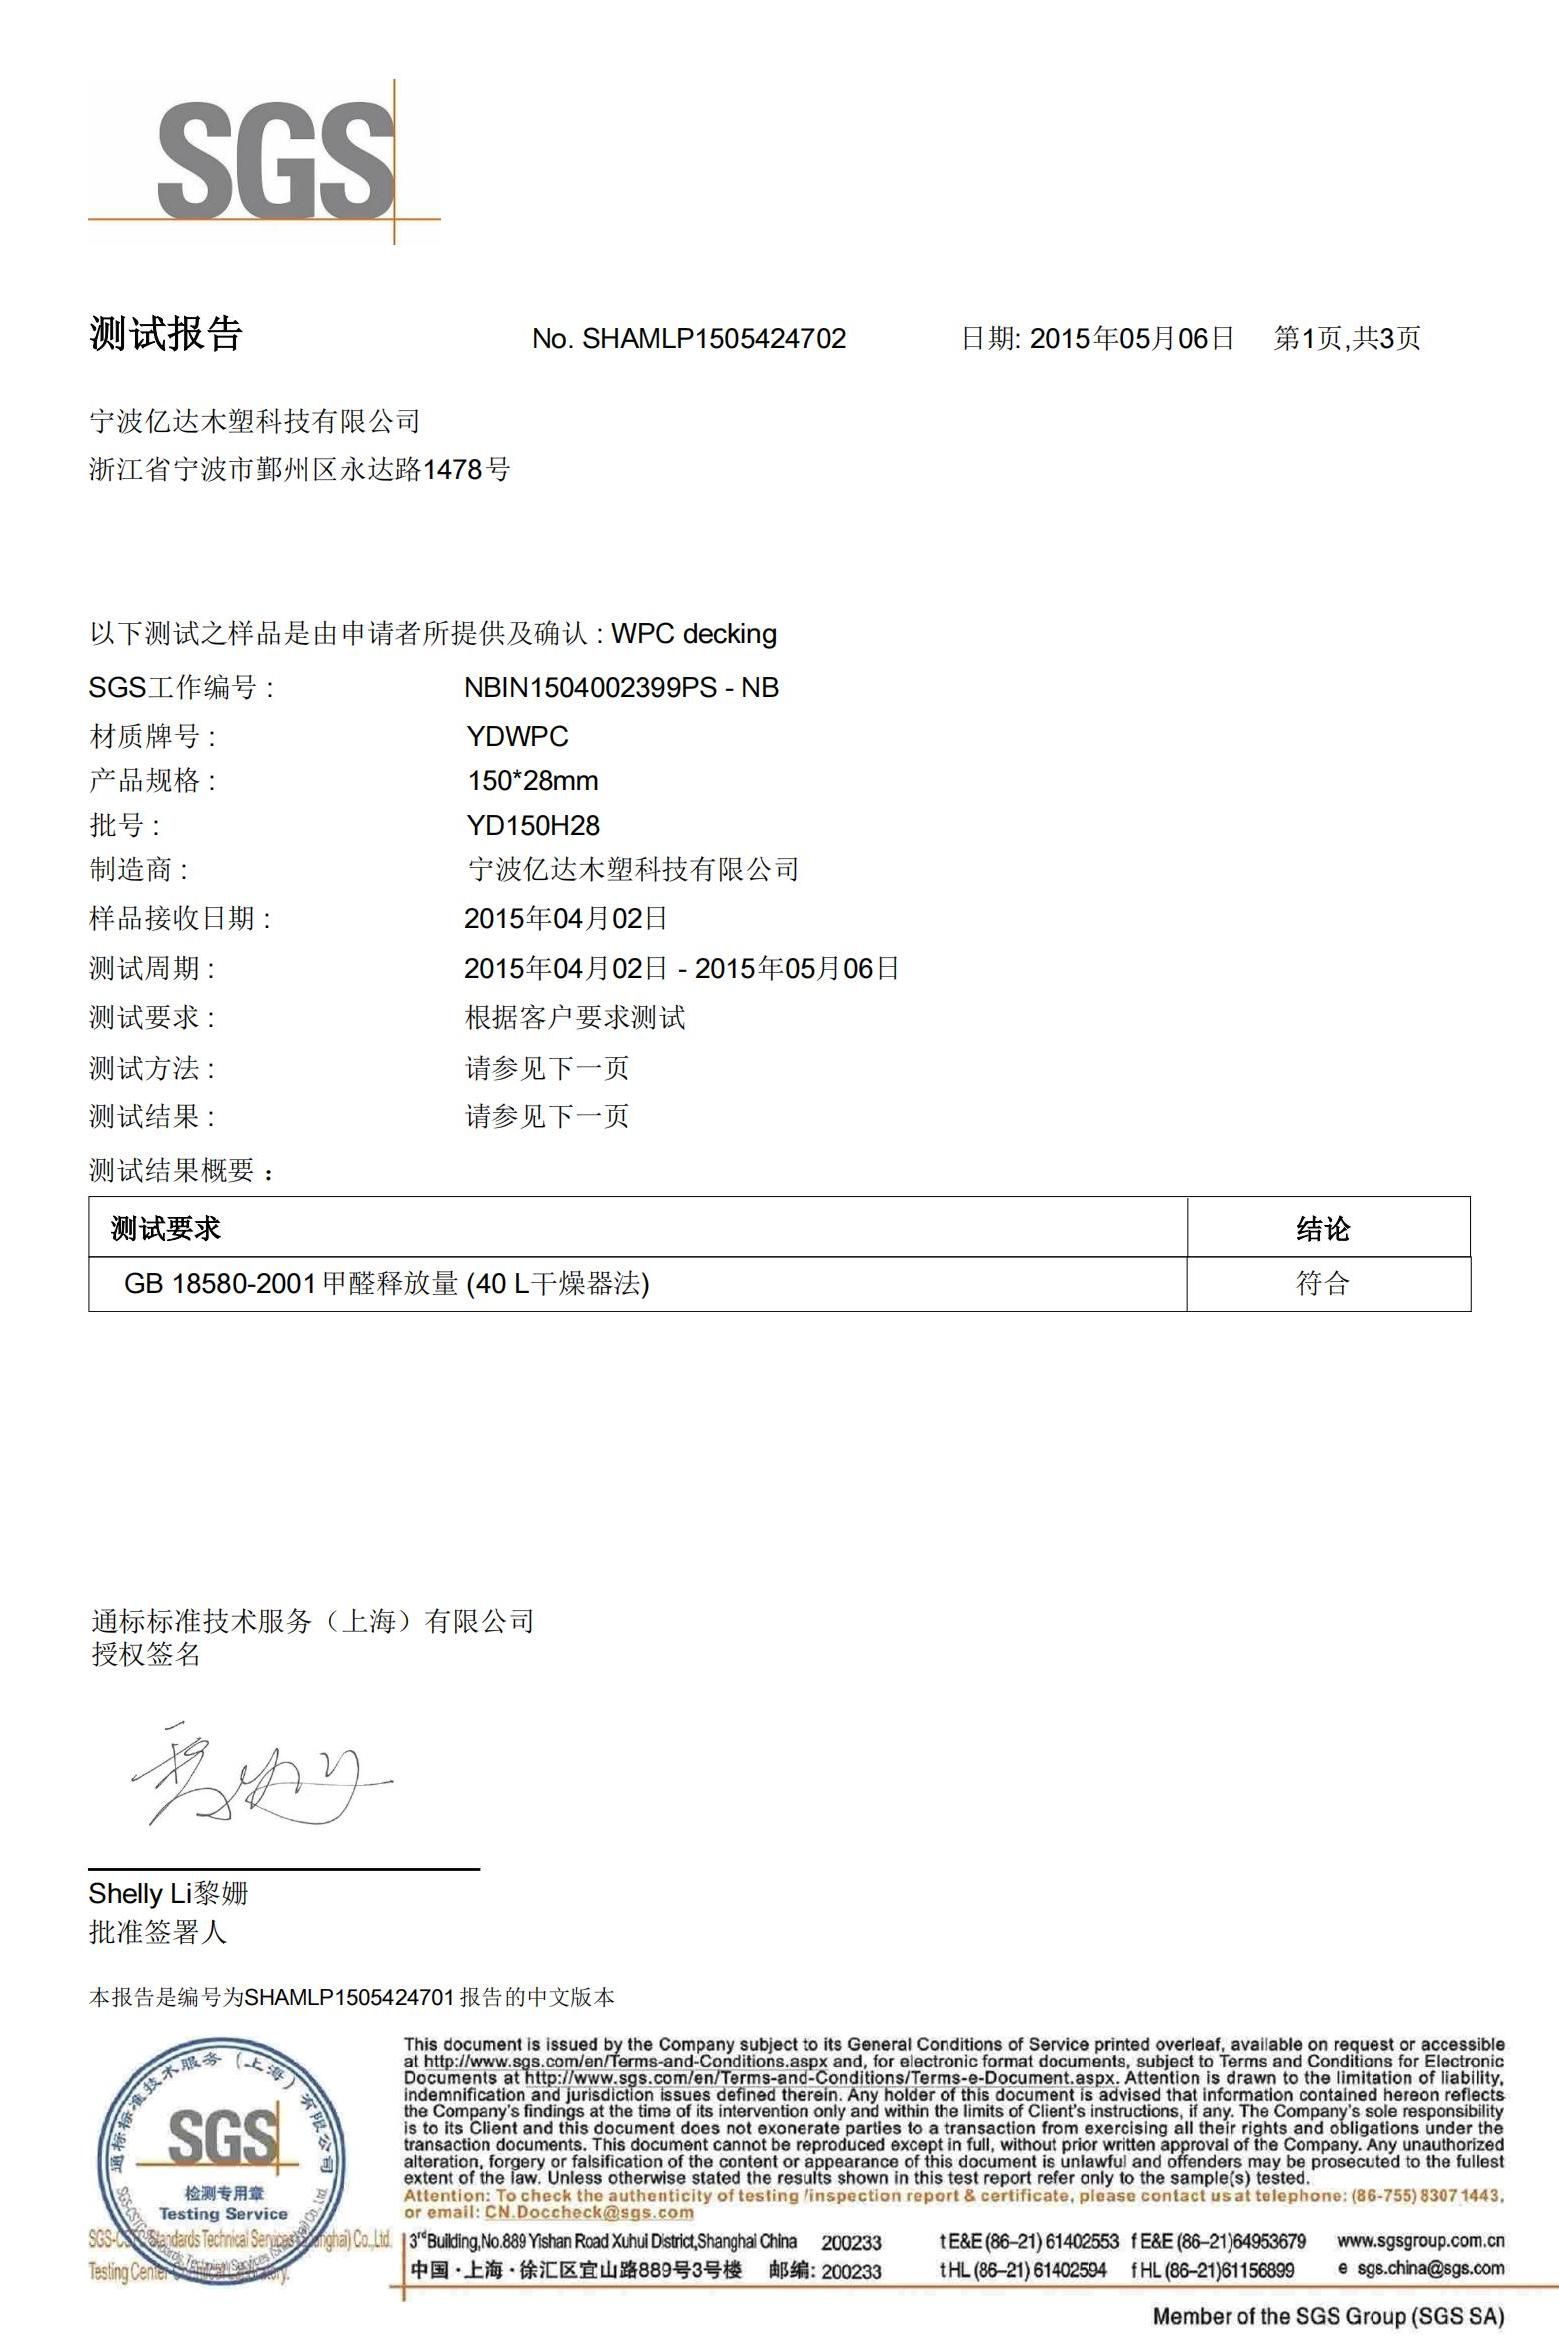 Certificate mpa